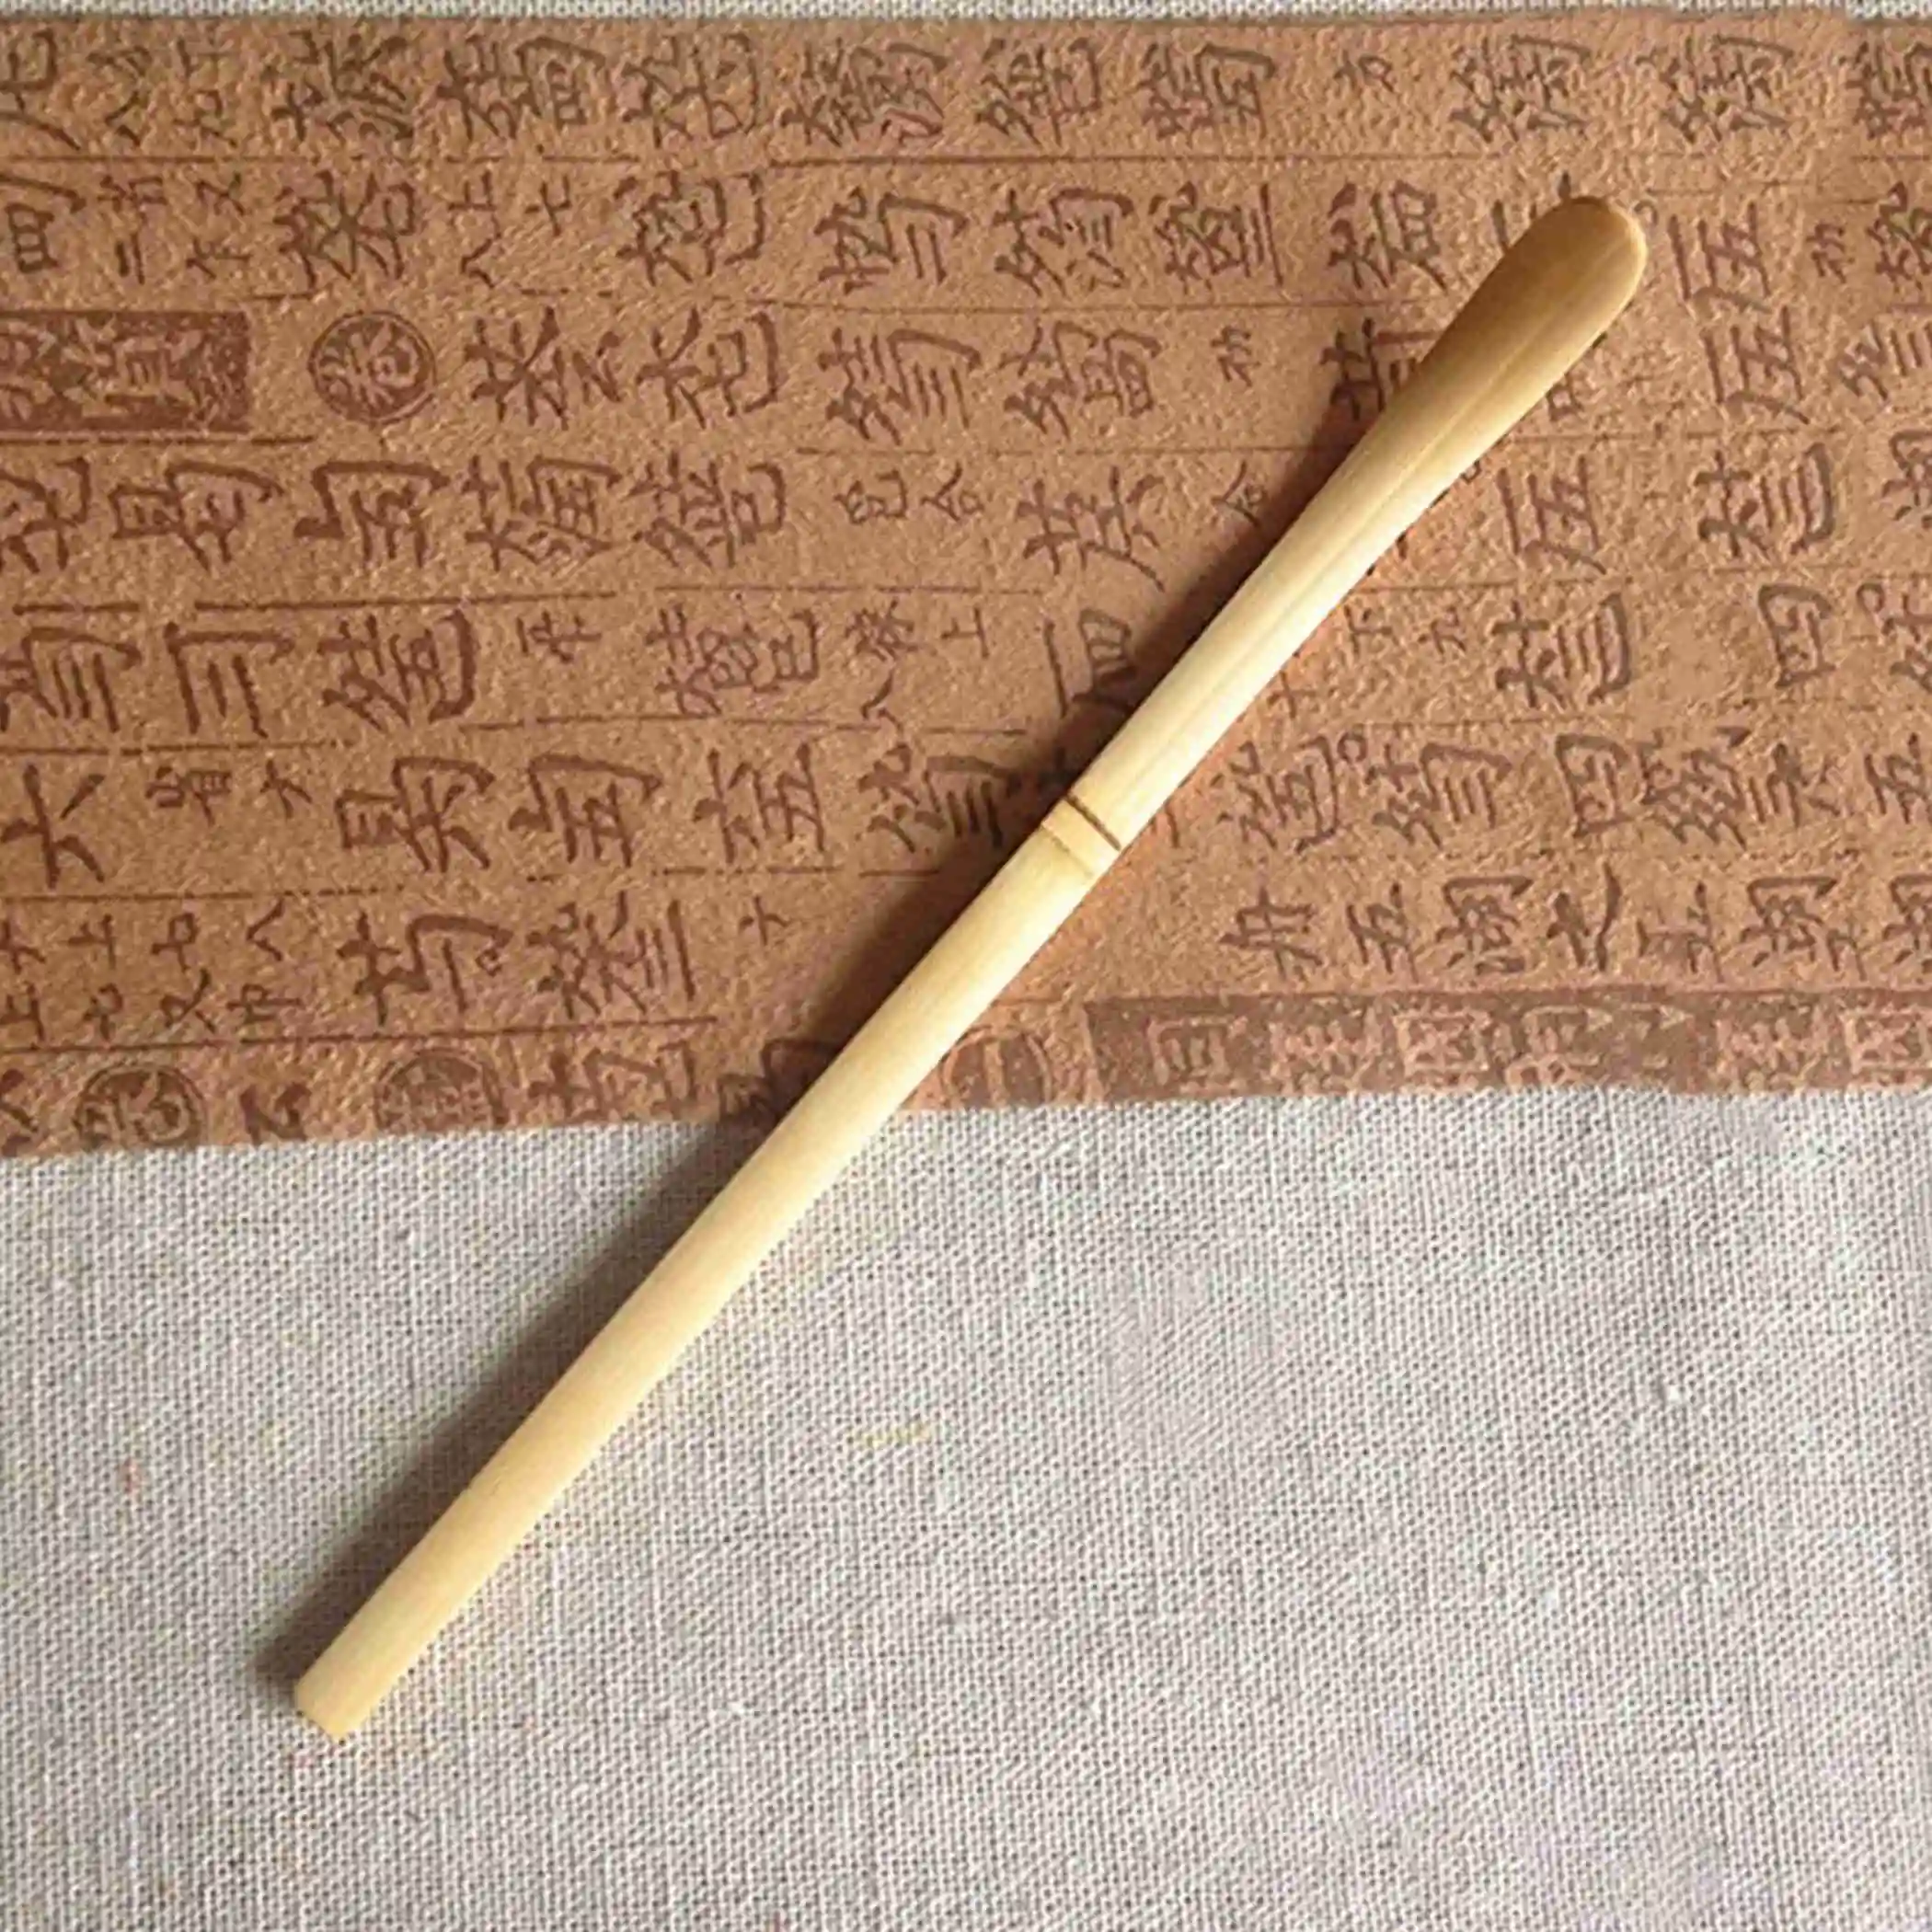 1x натуральный бамбук Chashaku матча бамбуковая чайная ложка церемония инструмент Аксессуар 18 см ложки для чая